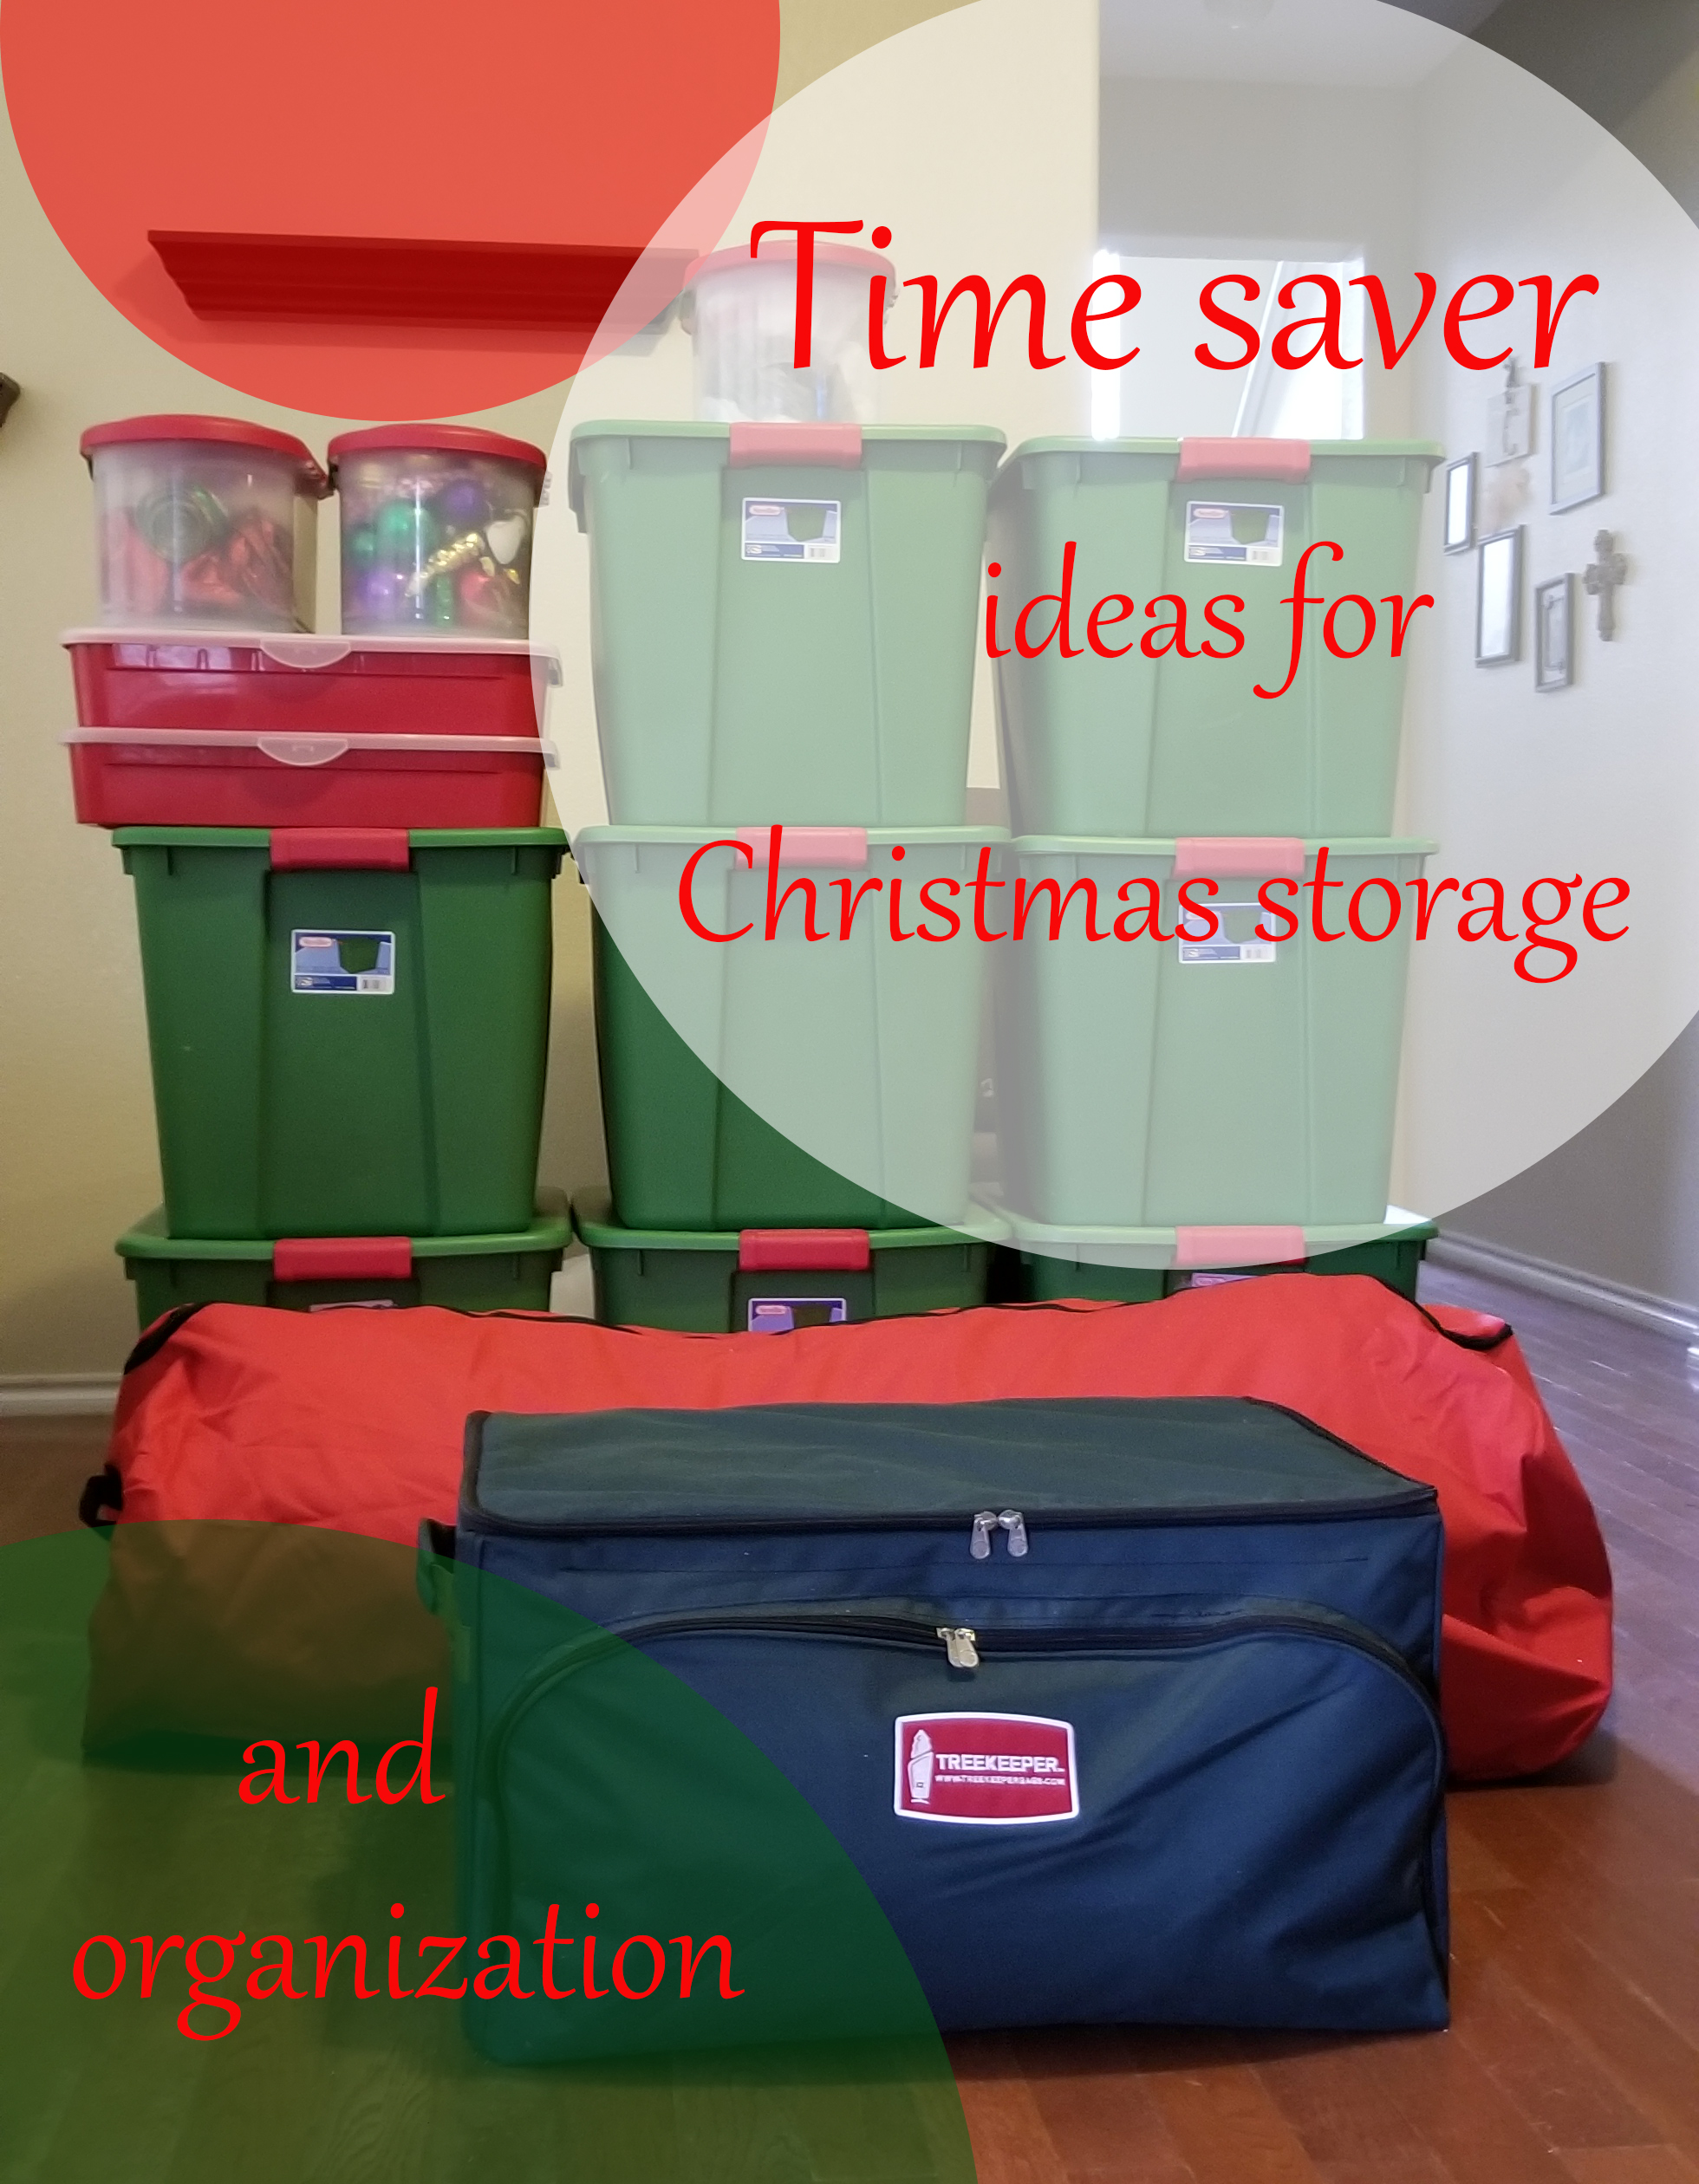 Christmas storage